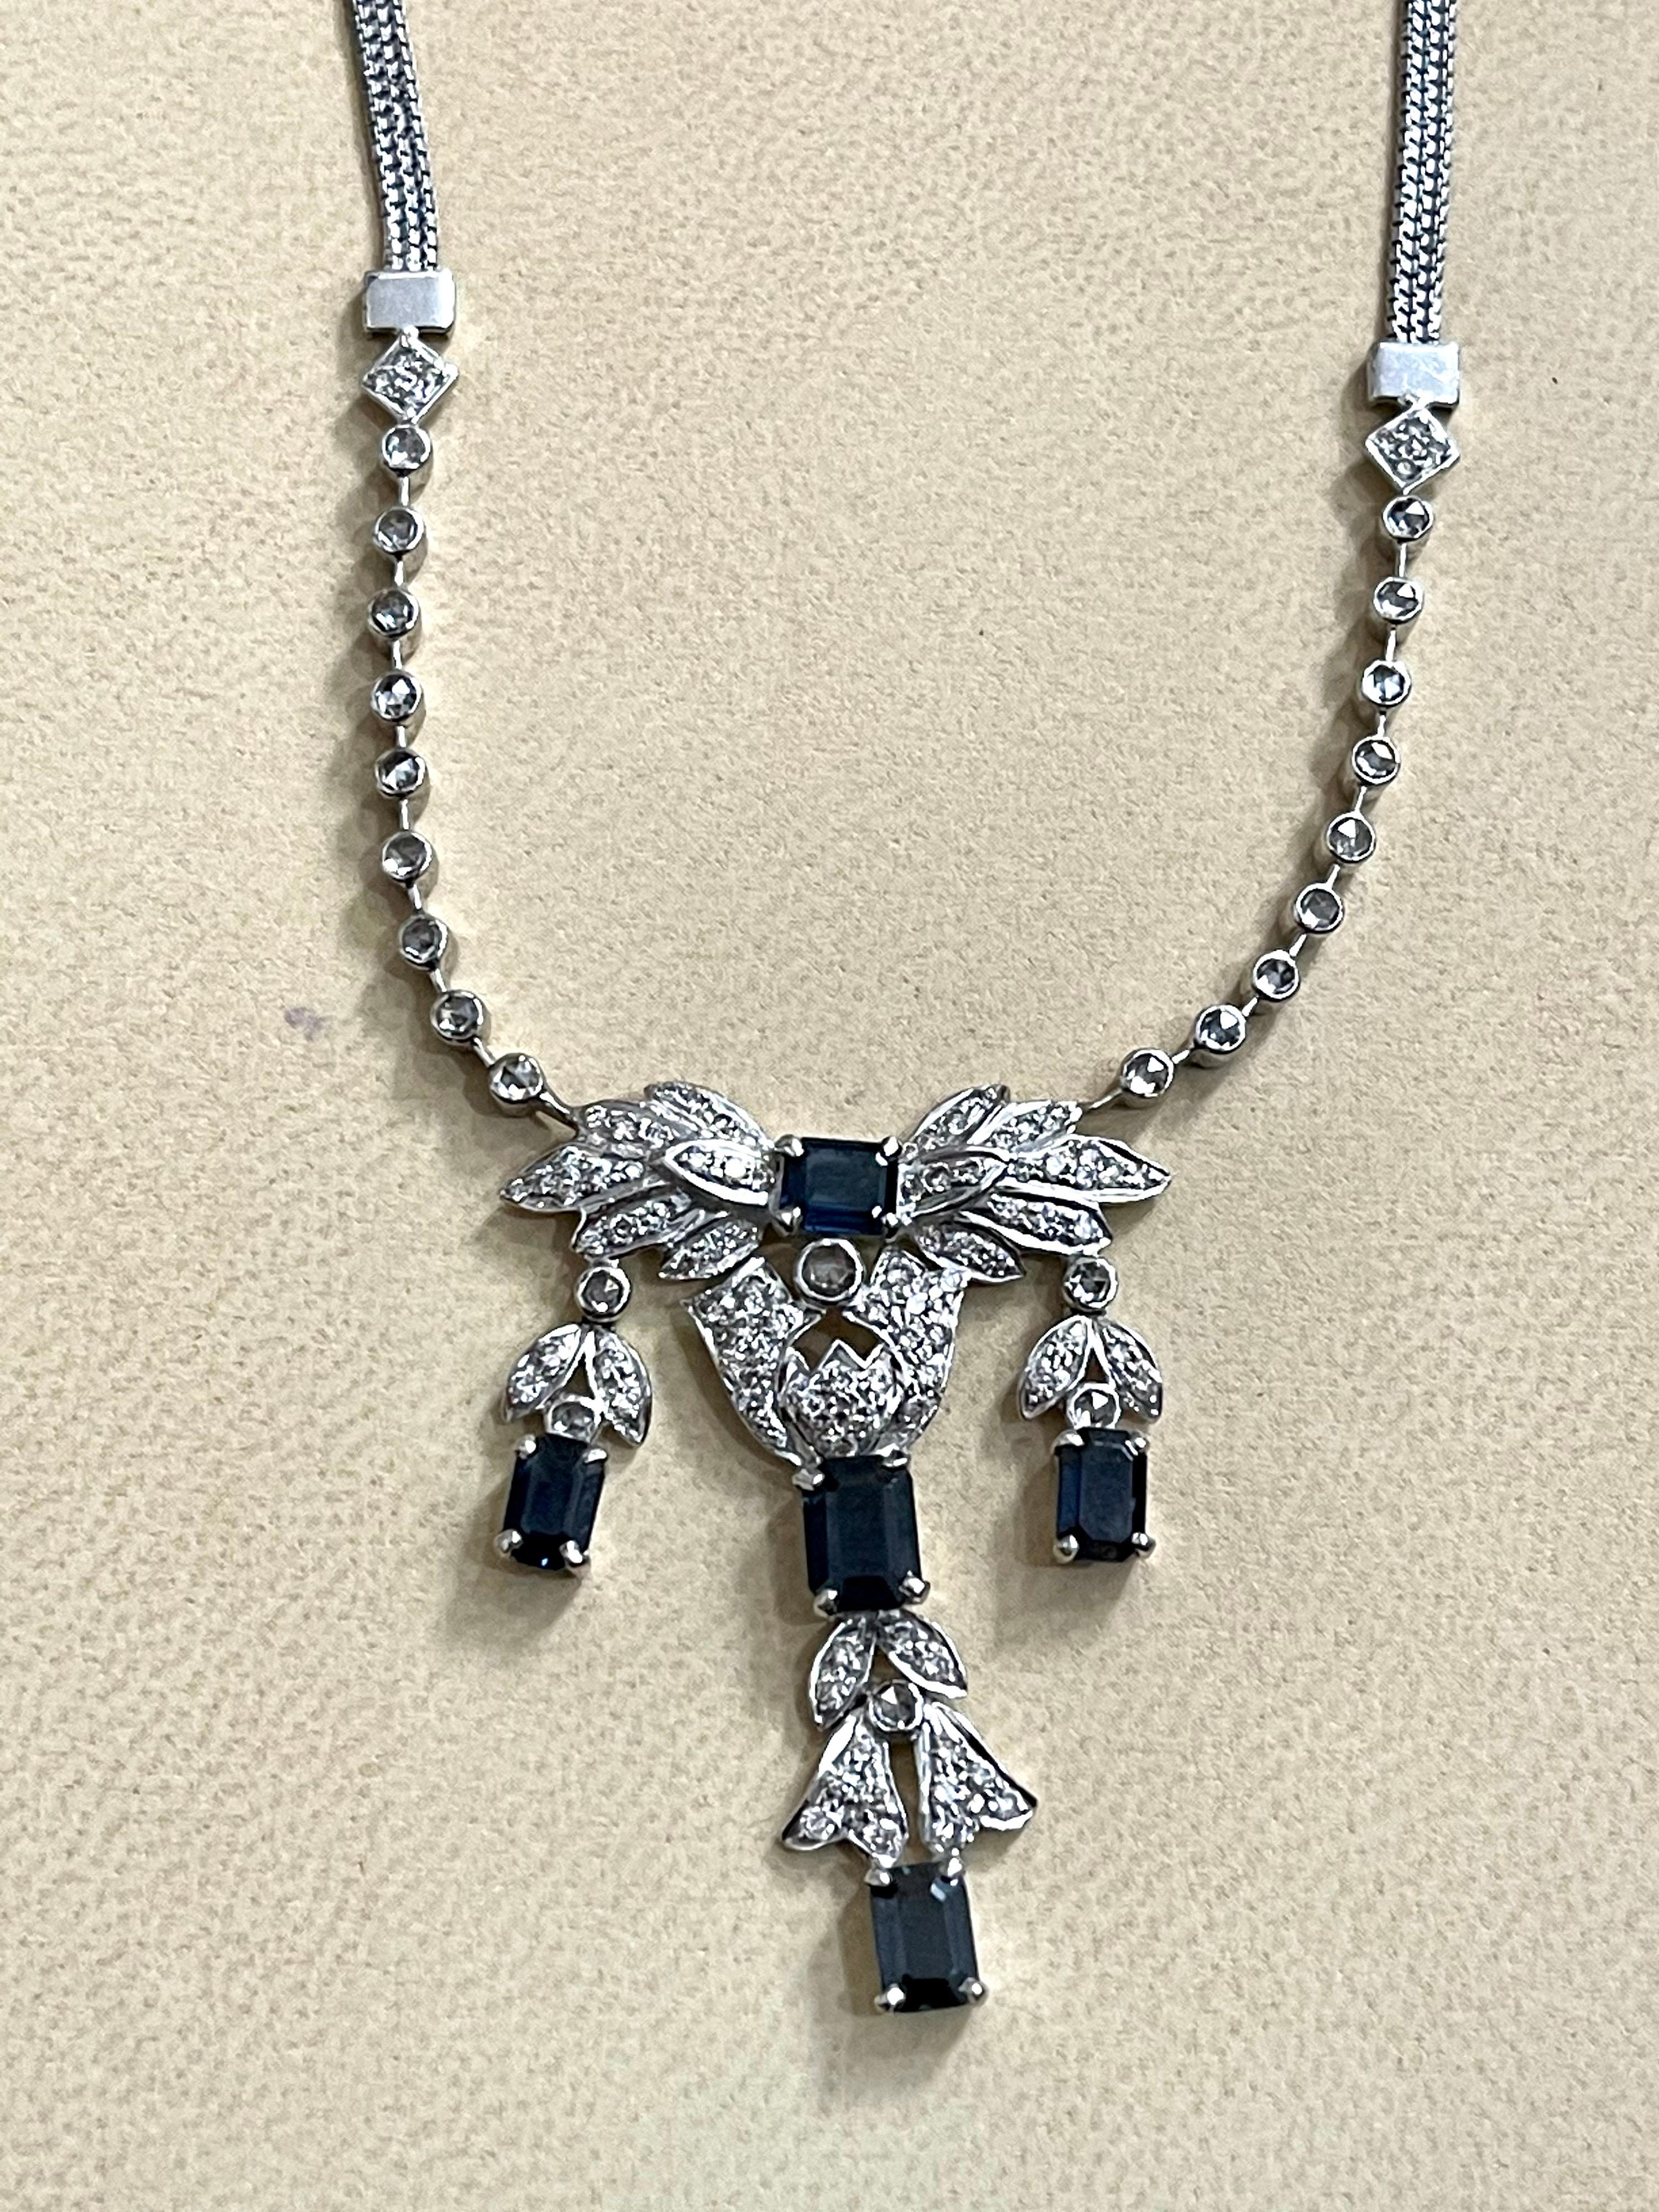 AGI Natural Blue Sapphire & Diamond Necklace 18 Karat White Gold, Suite, Estate For Sale 6